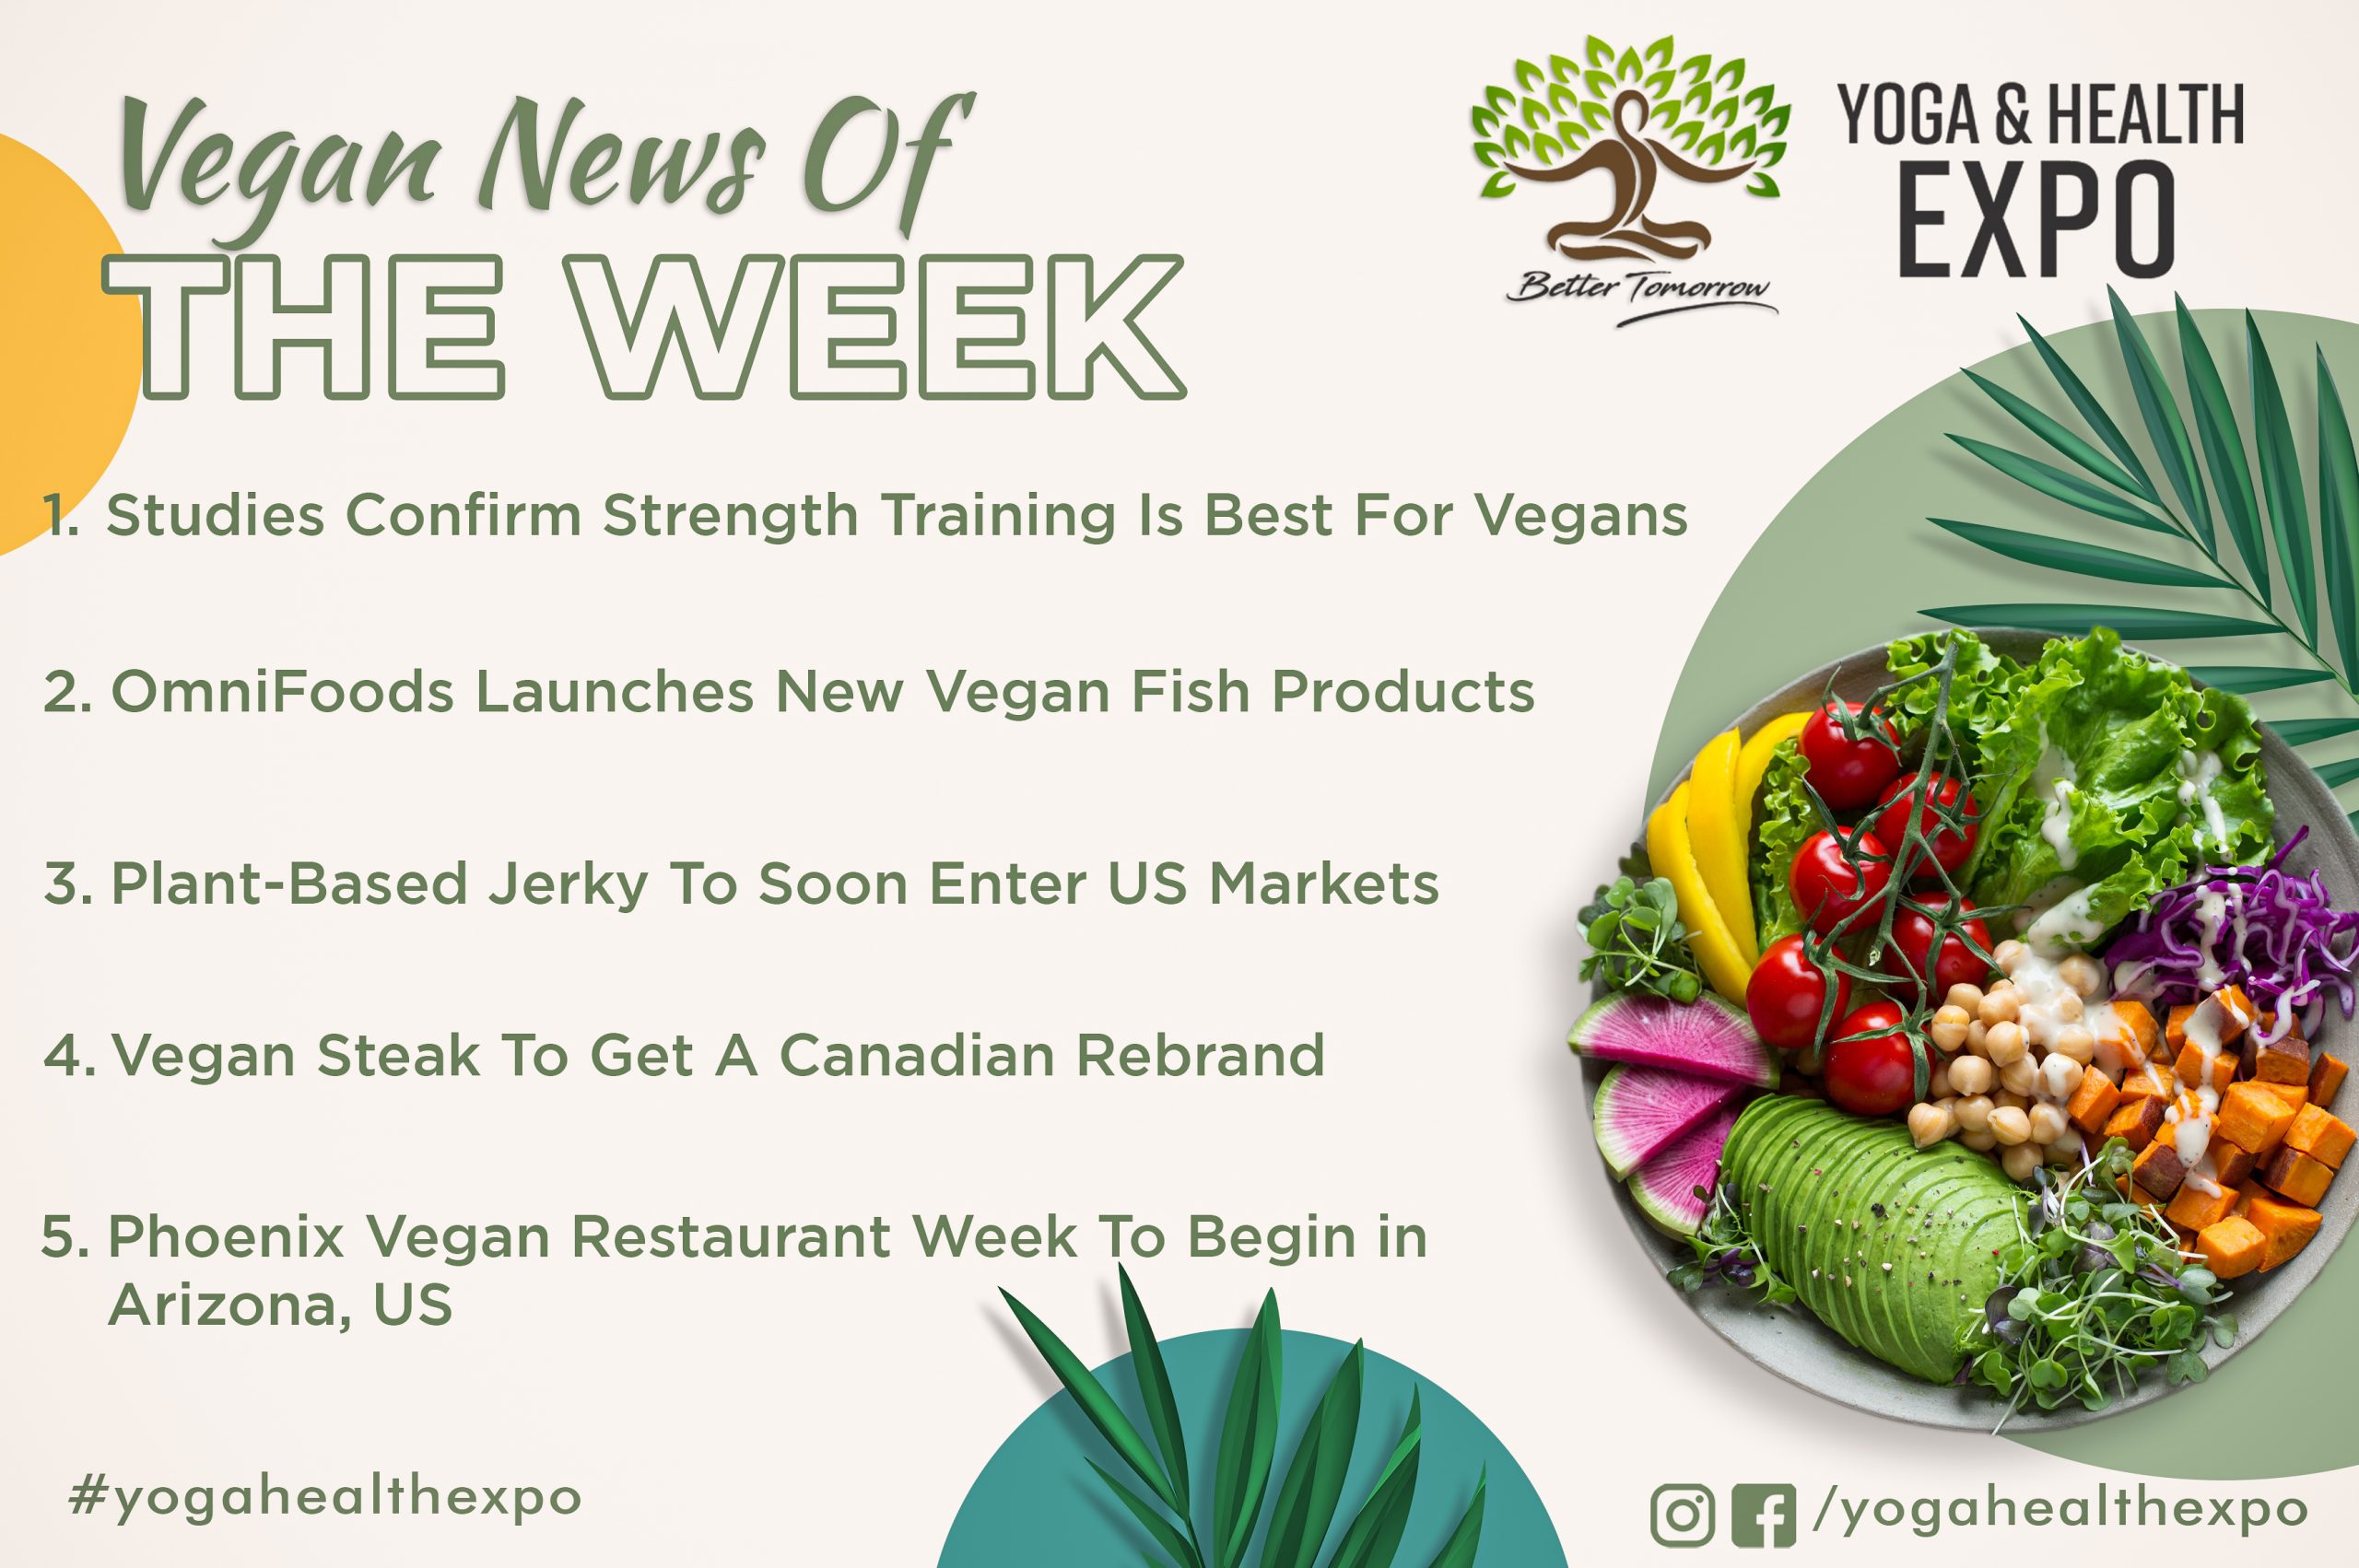 Vegan news of the week